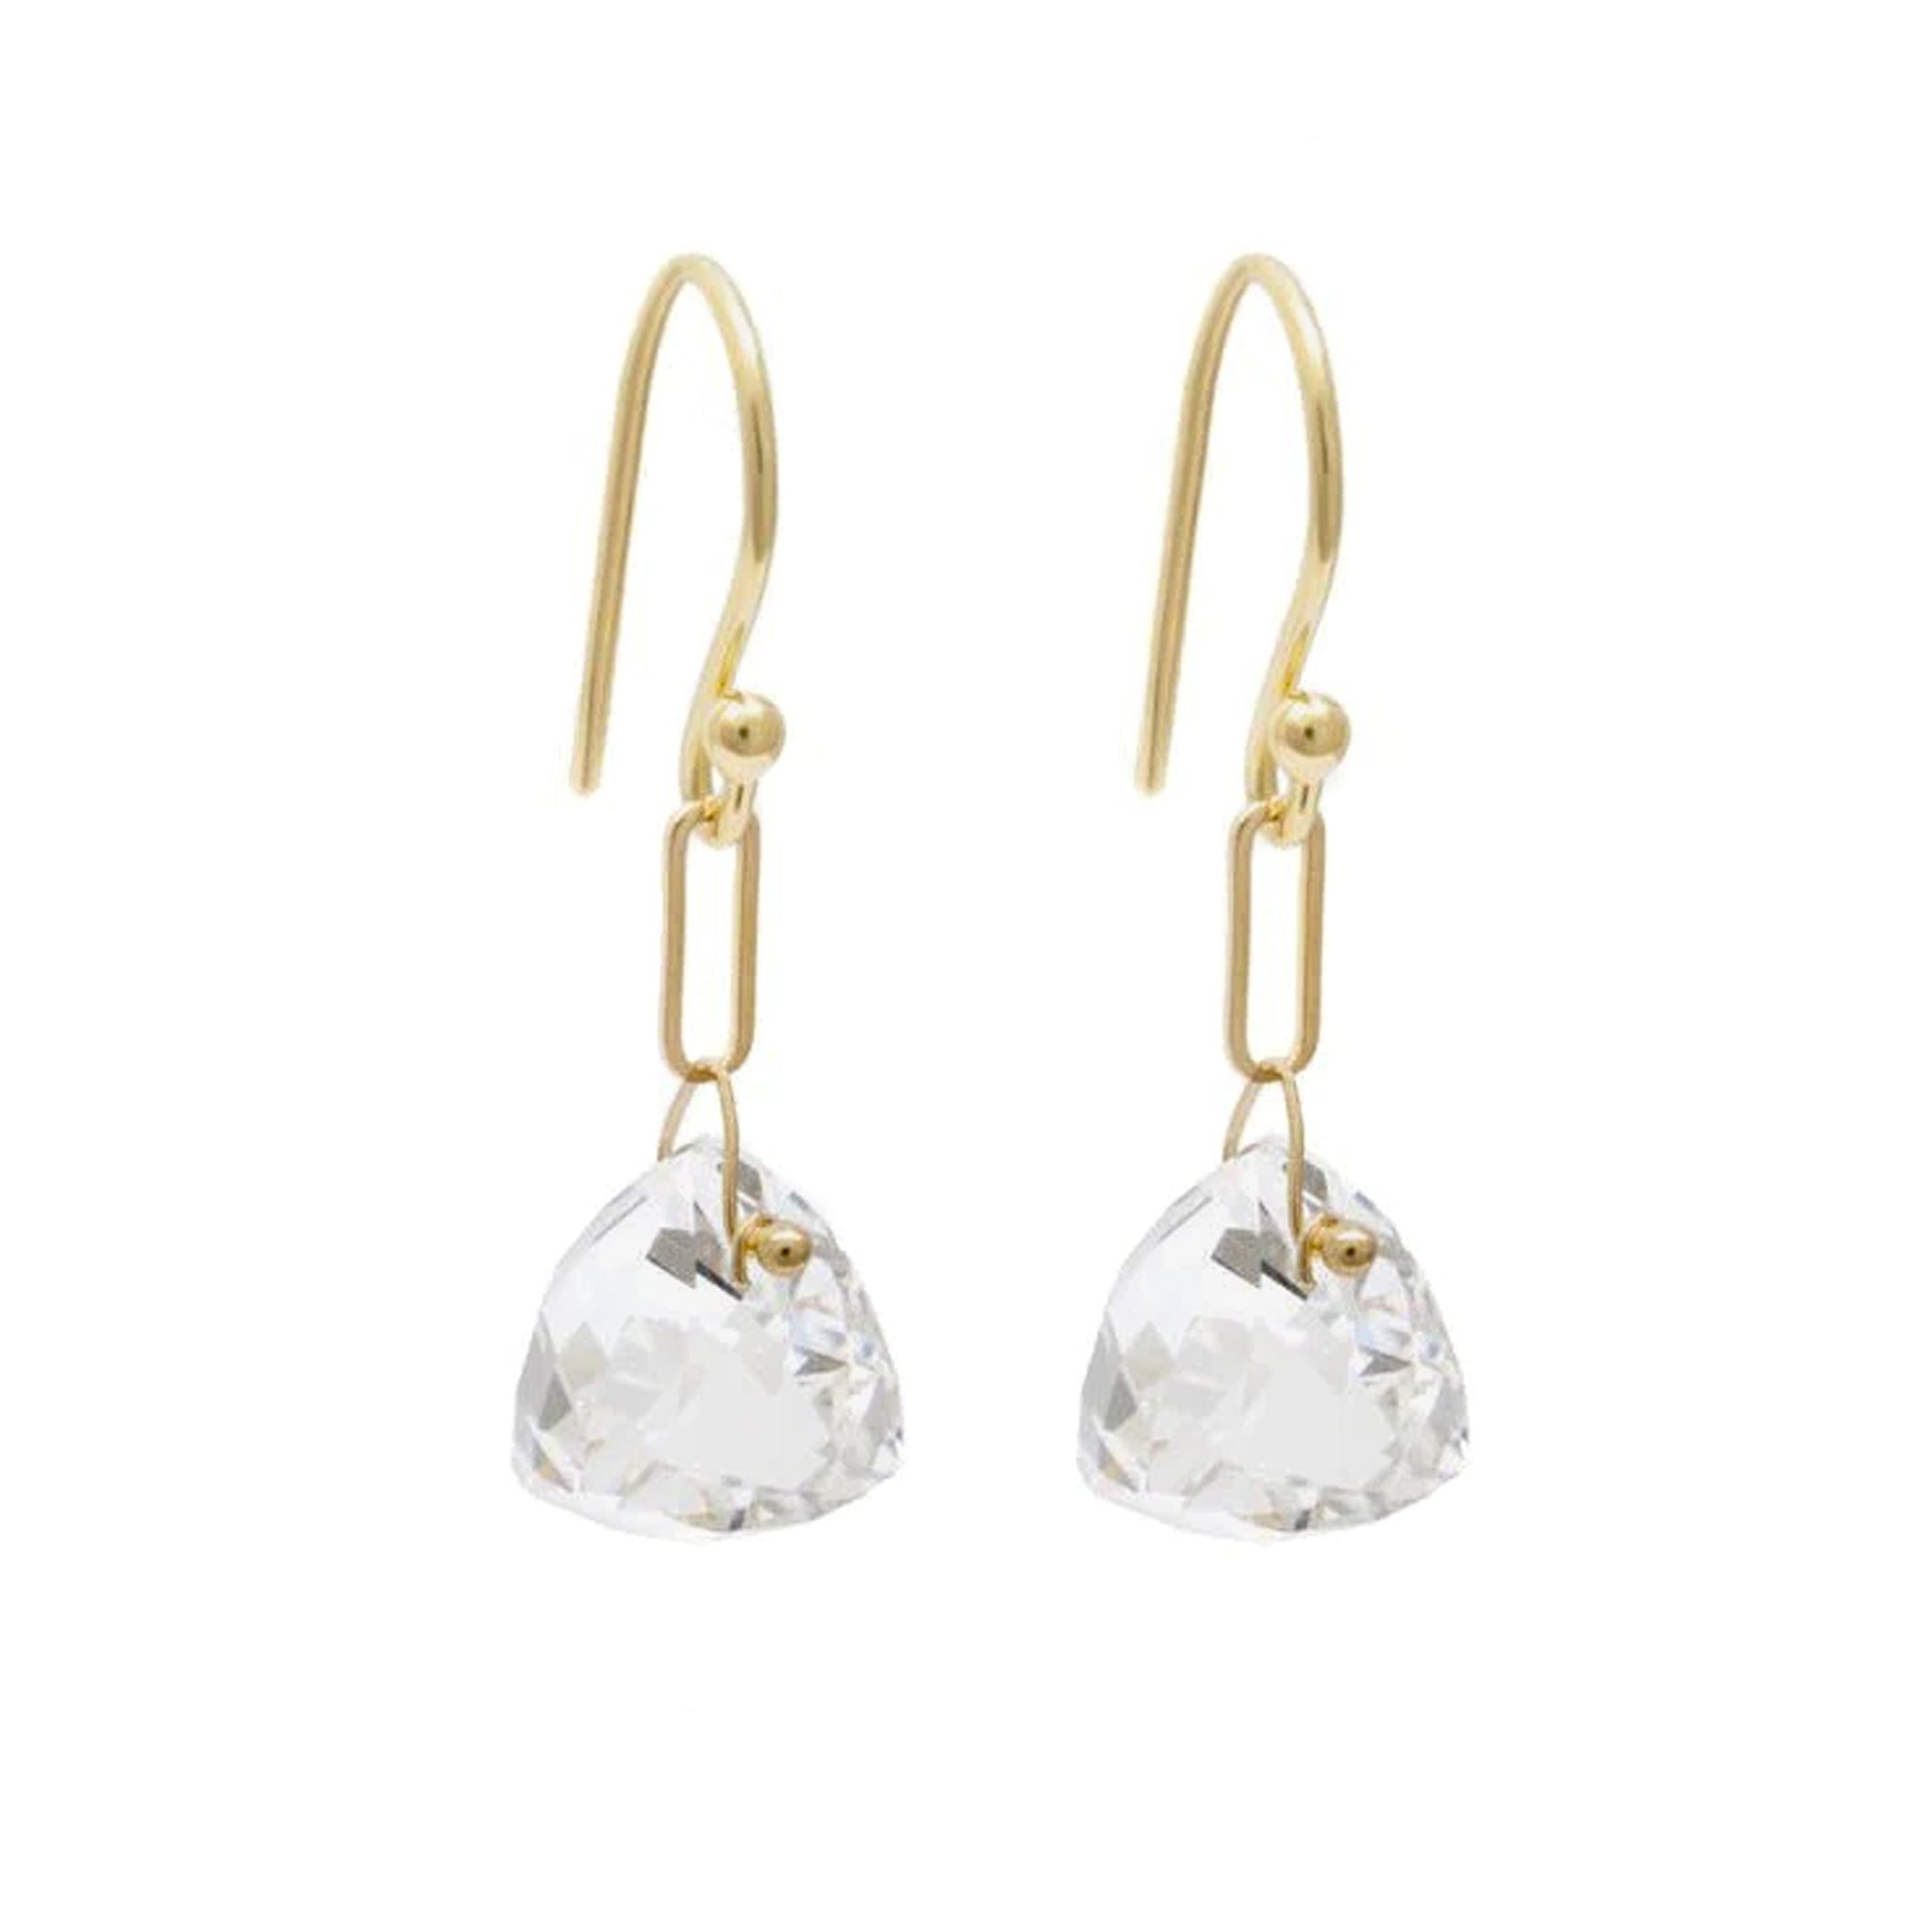 18K Gold Rock Crystal Quartz Paperclip Drop Earrings - Peridot Fine Jewelry - Anne Sportun